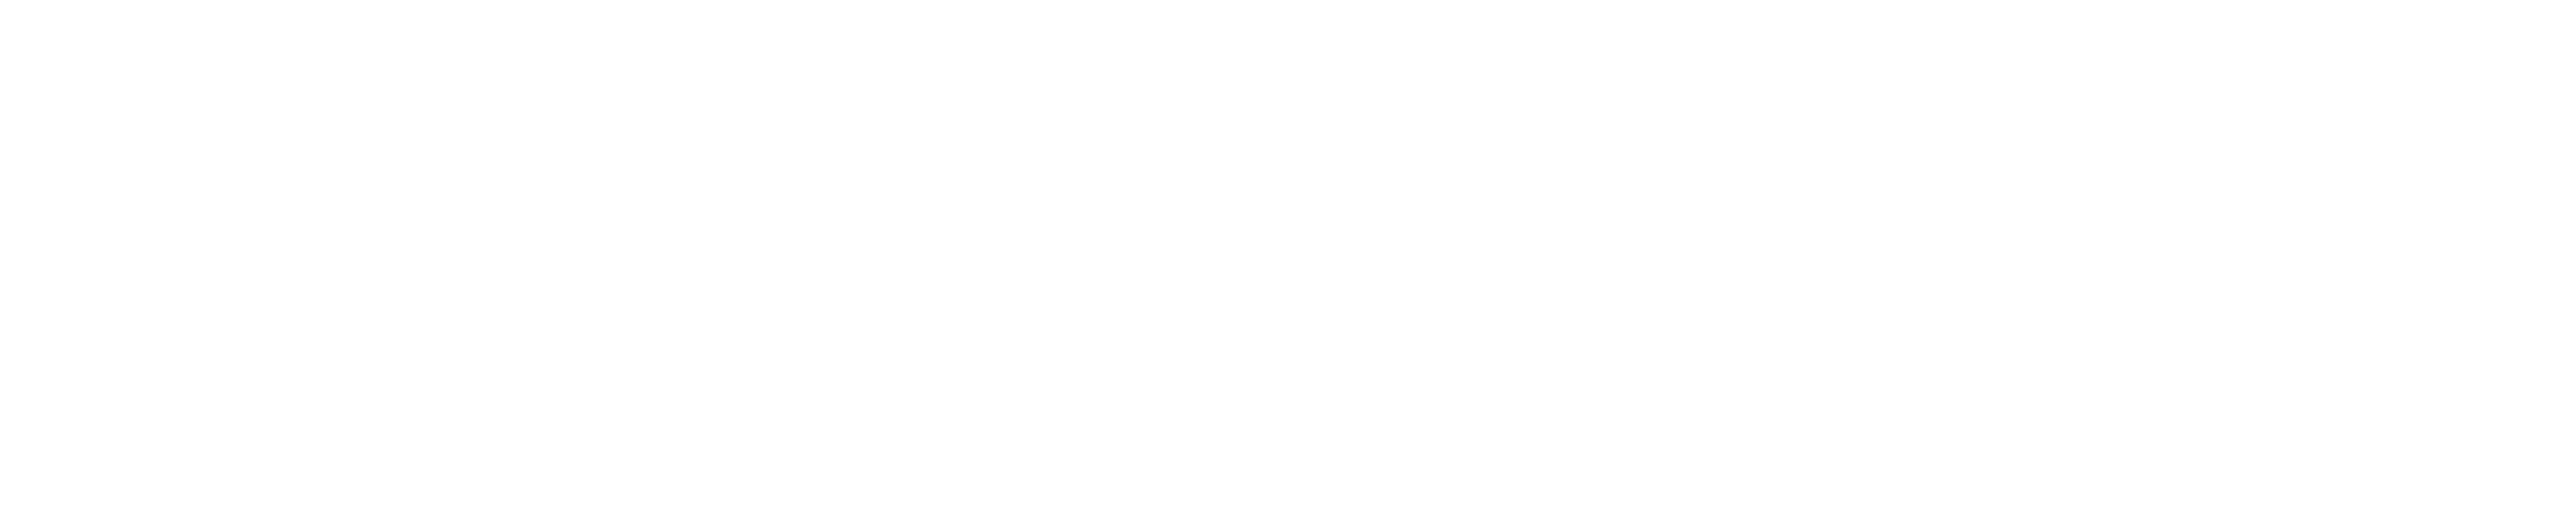 Making Boating Better, Together